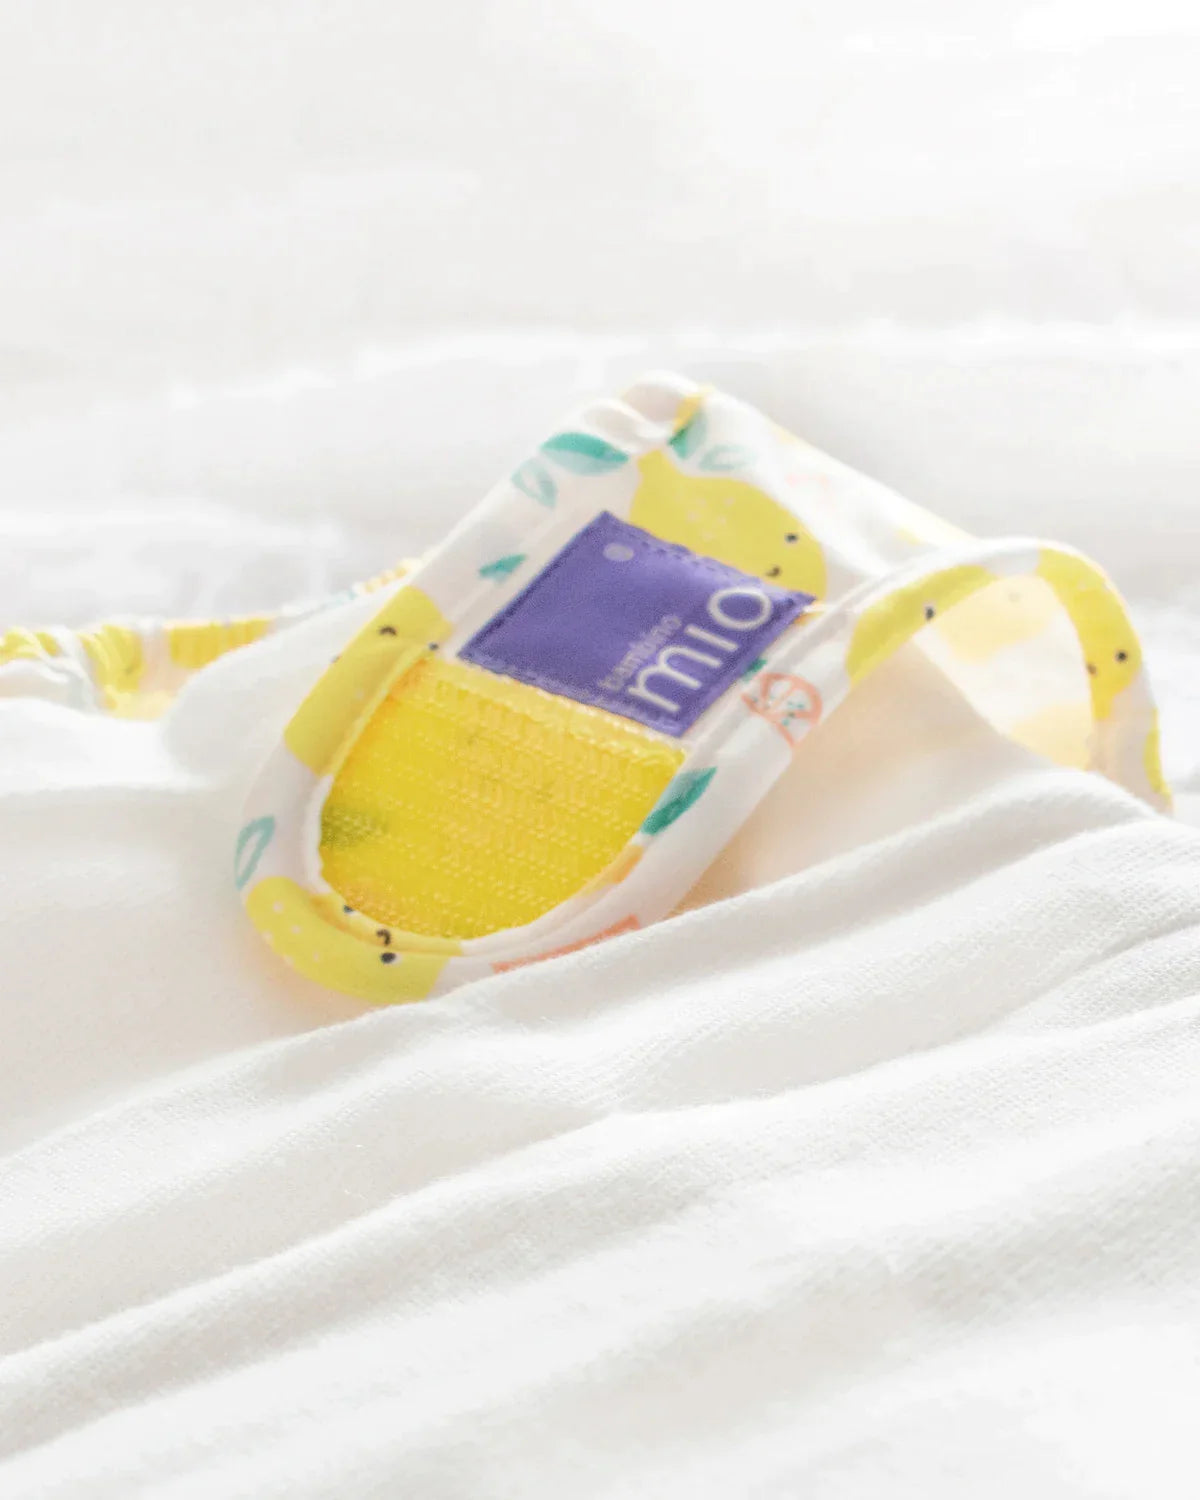 mioduo reusable diaper cover - Bambino Mio (EU)